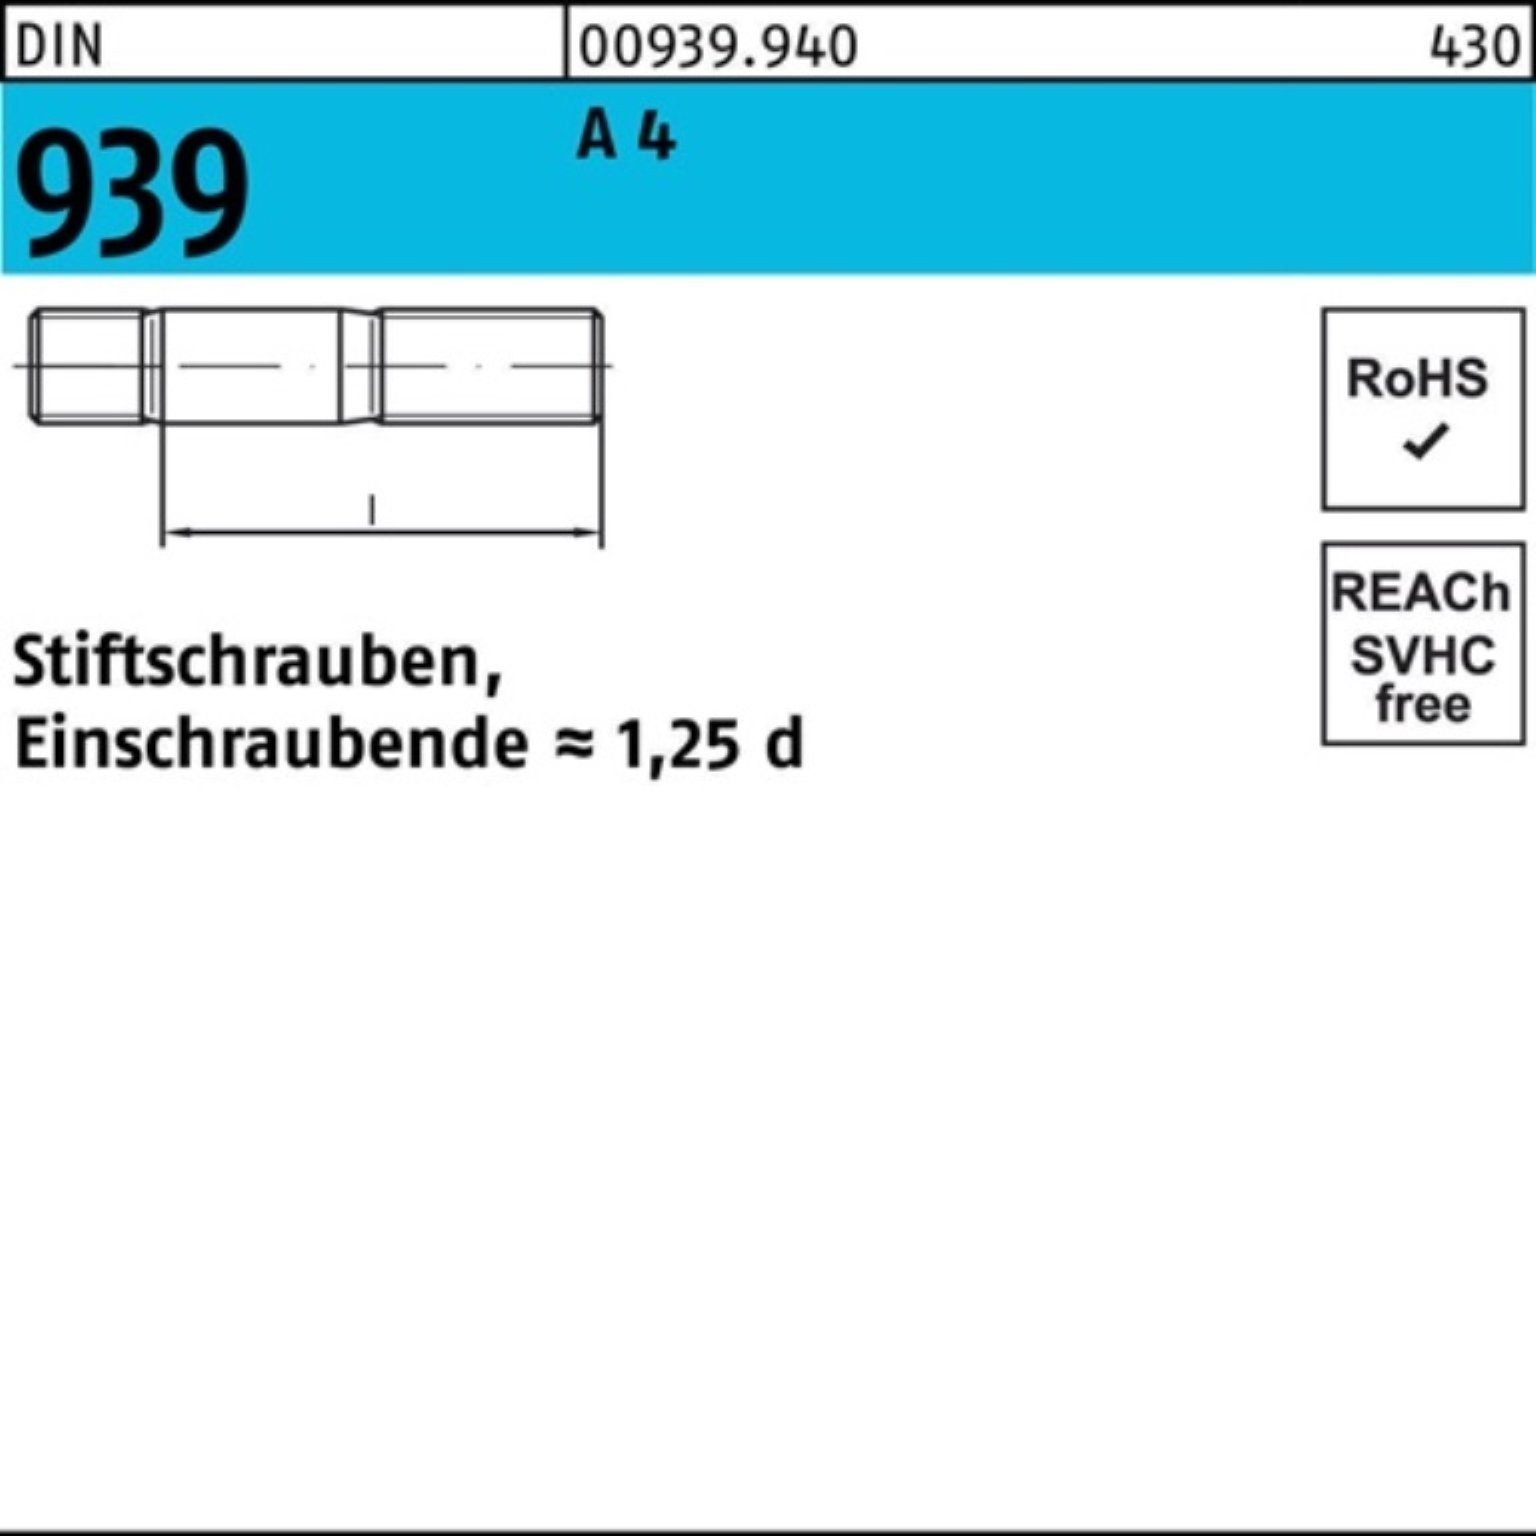 Reyher Stiftschraube 100er Pack DIN 1 M16x A Stiftschraube 140 4 S Einschraubende=1,25d 939